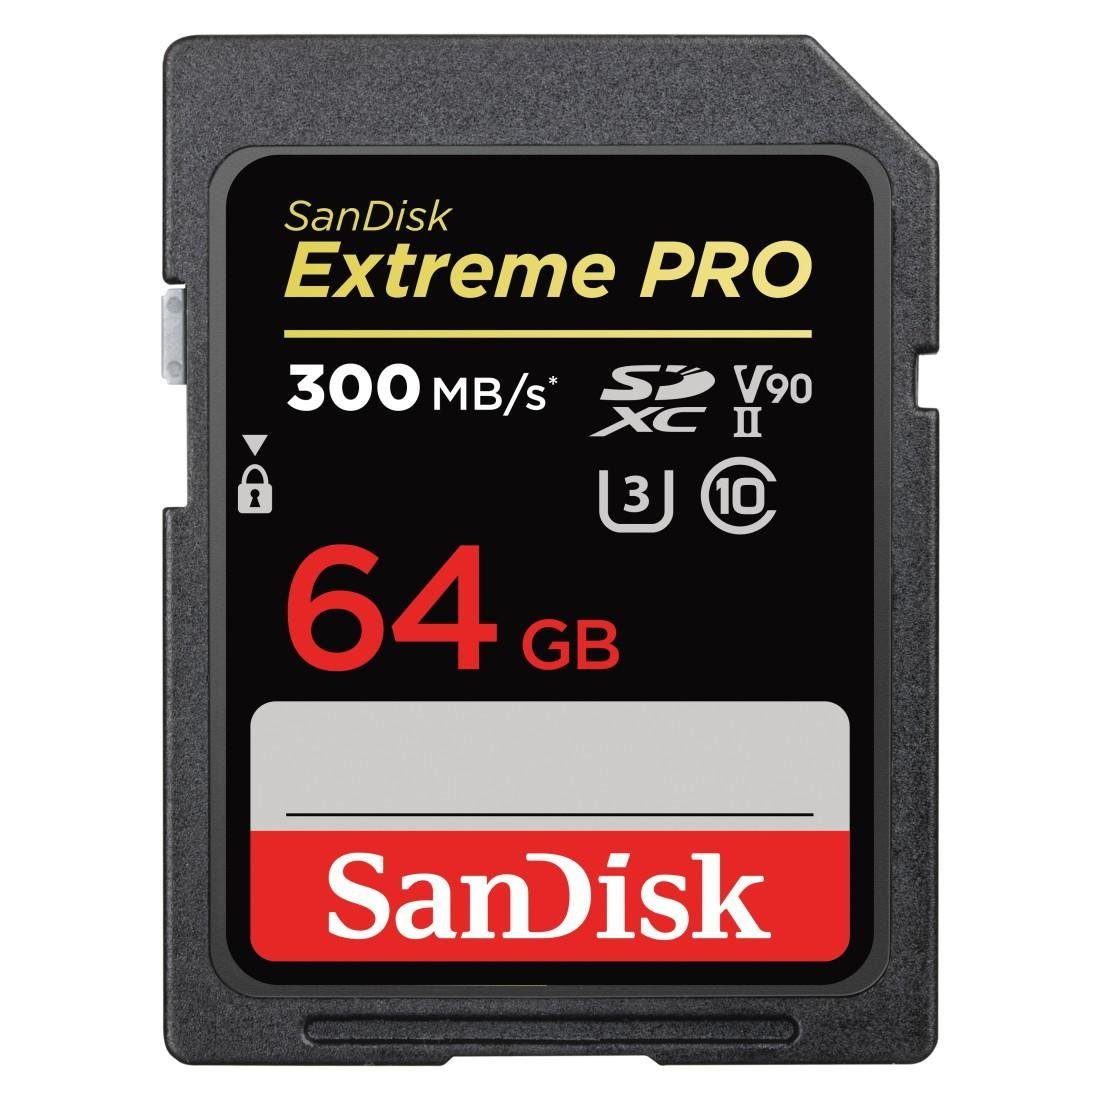 Sandisk Extreme Pro Speicherkarte (64 GB, UHS-I Class 10, 300 MB/s Lesegeschwindigkeit)